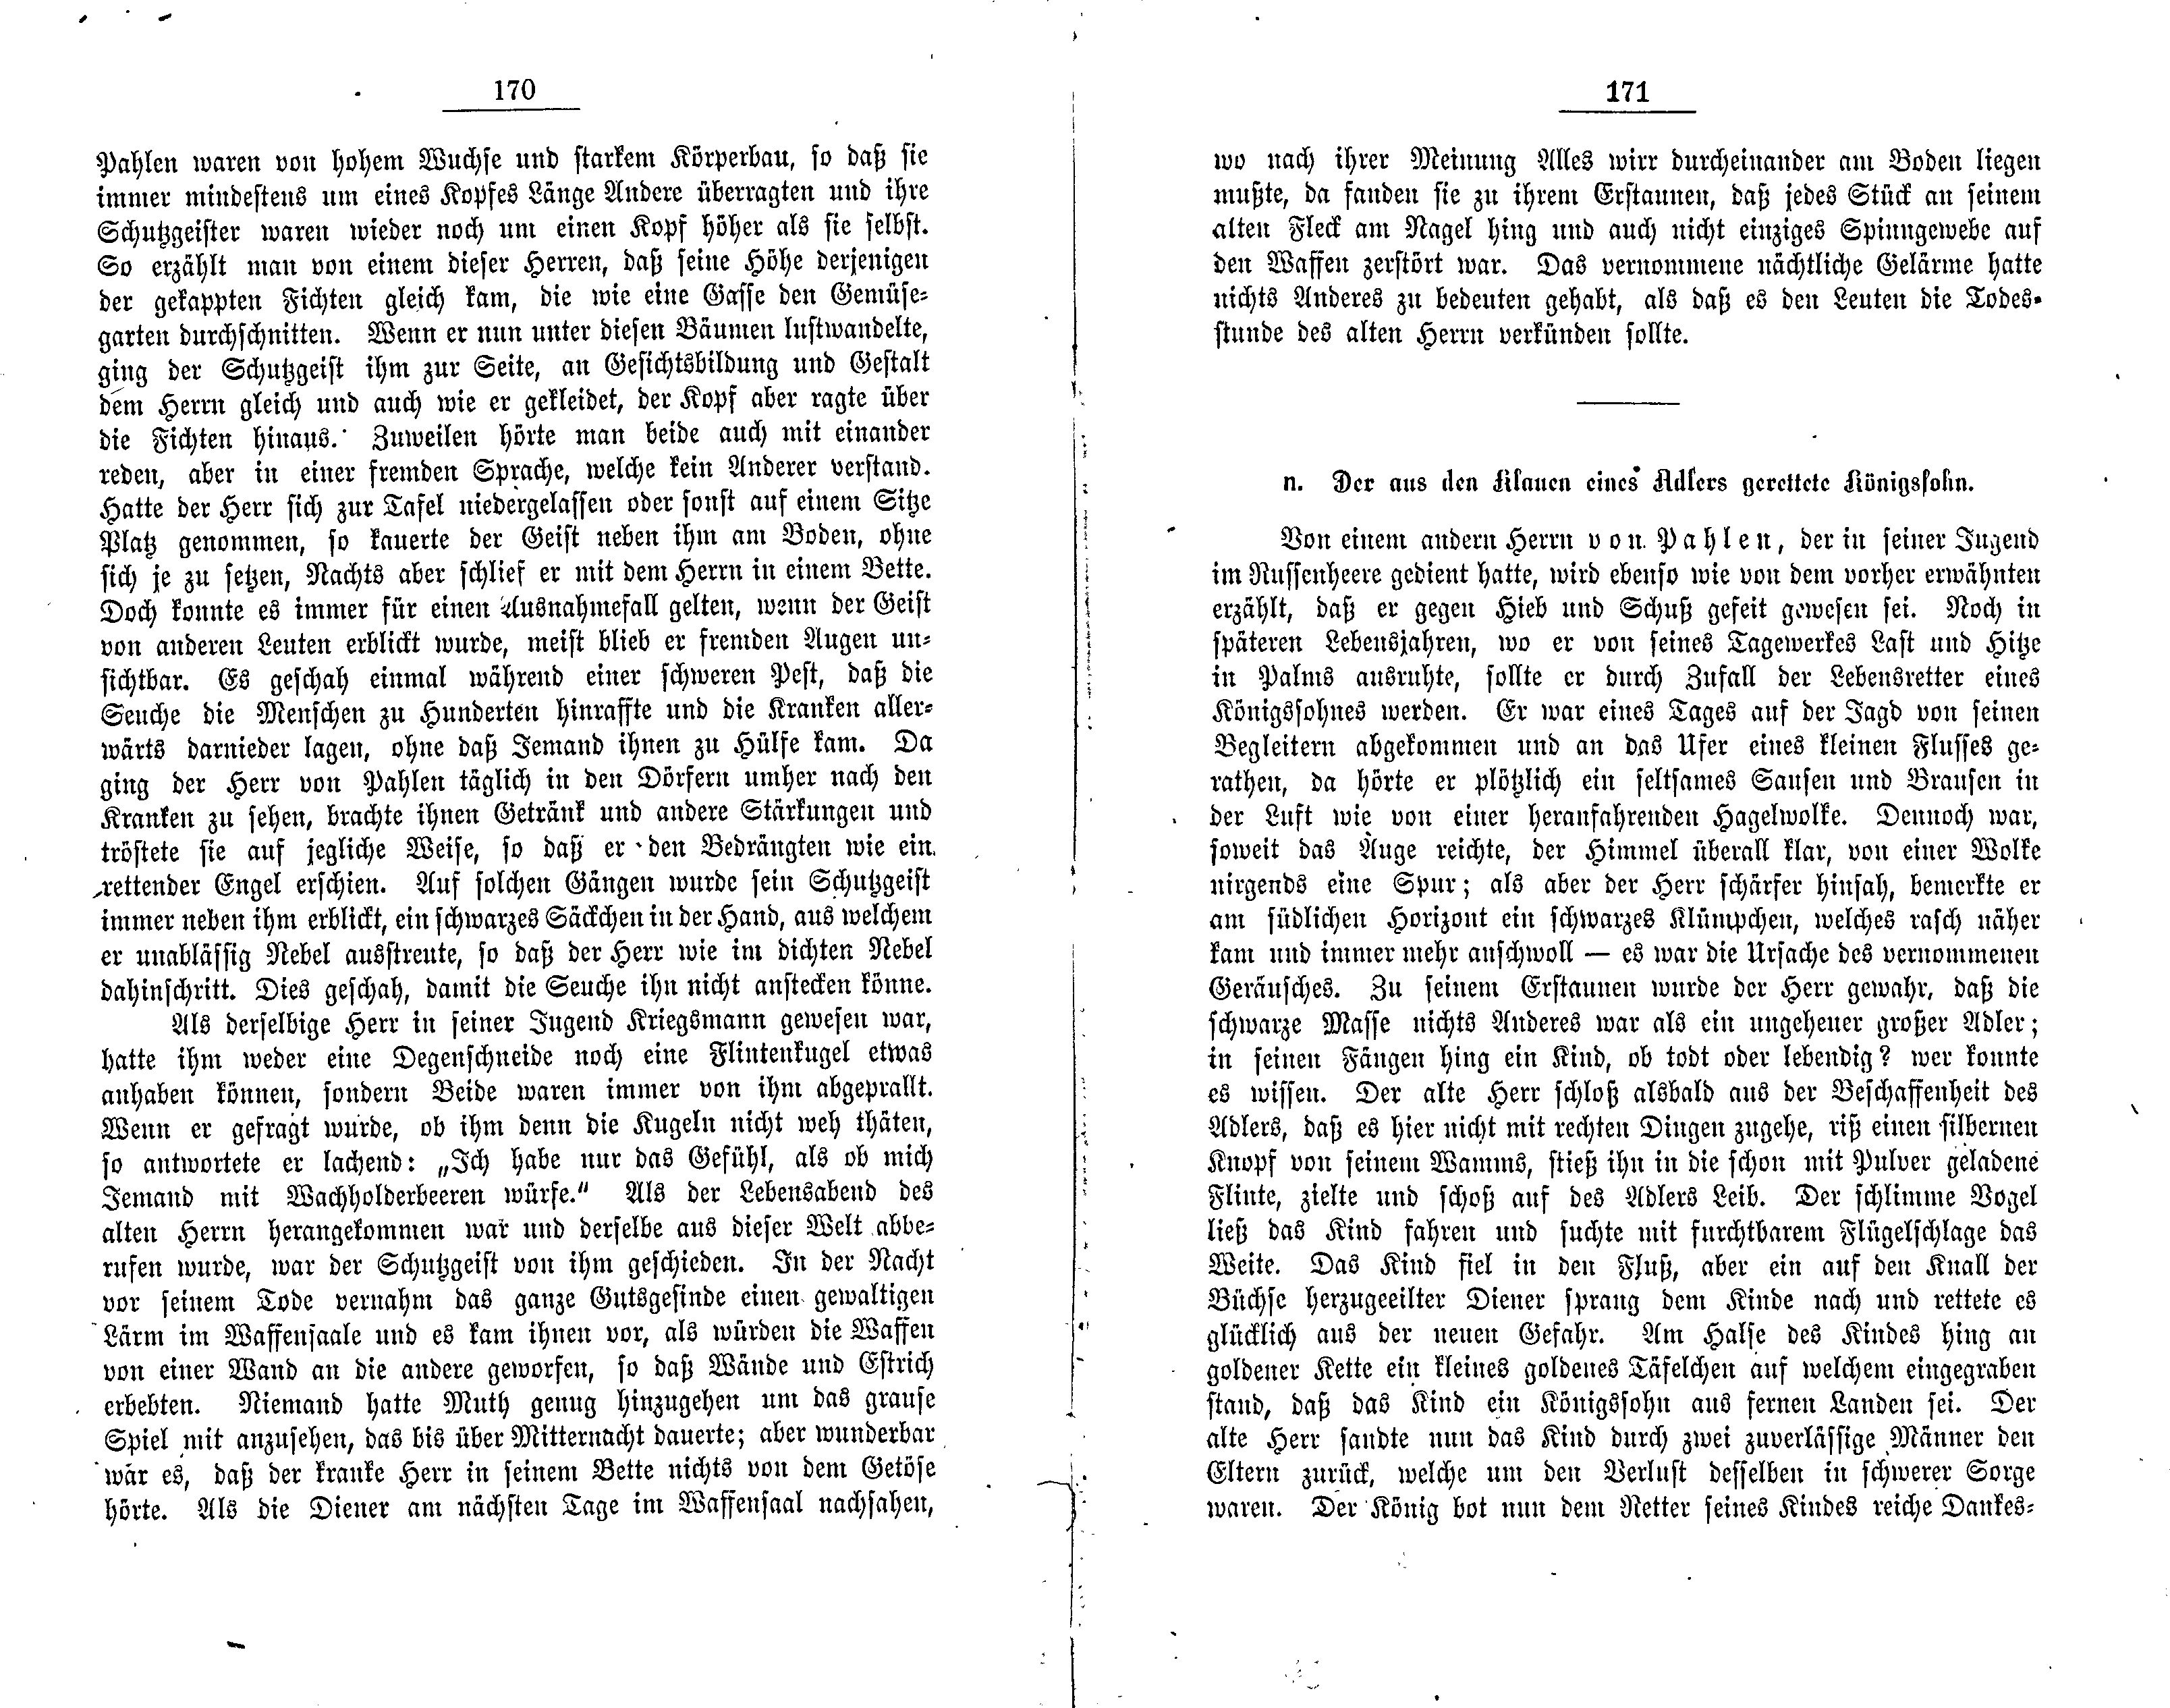 Der aus den klauen eines Adlers gerettete Königssohn (1881) | 1. (170-171) Main body of text